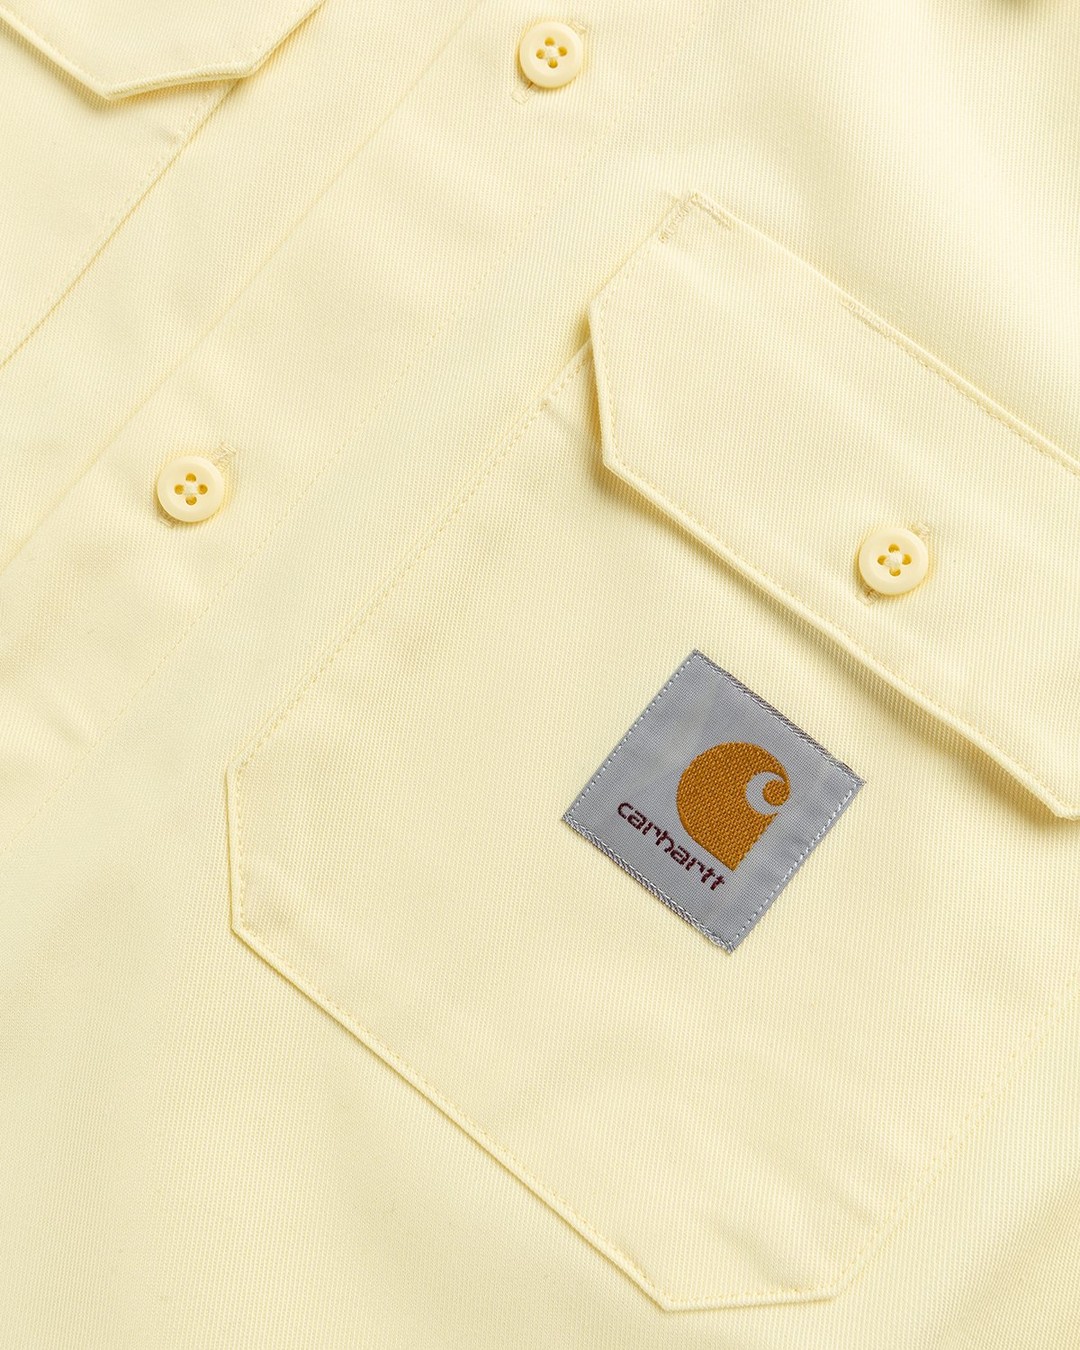 Carhartt WIP – Master Shirt Soft Yellow - Shortsleeve Shirts - Yellow - Image 5